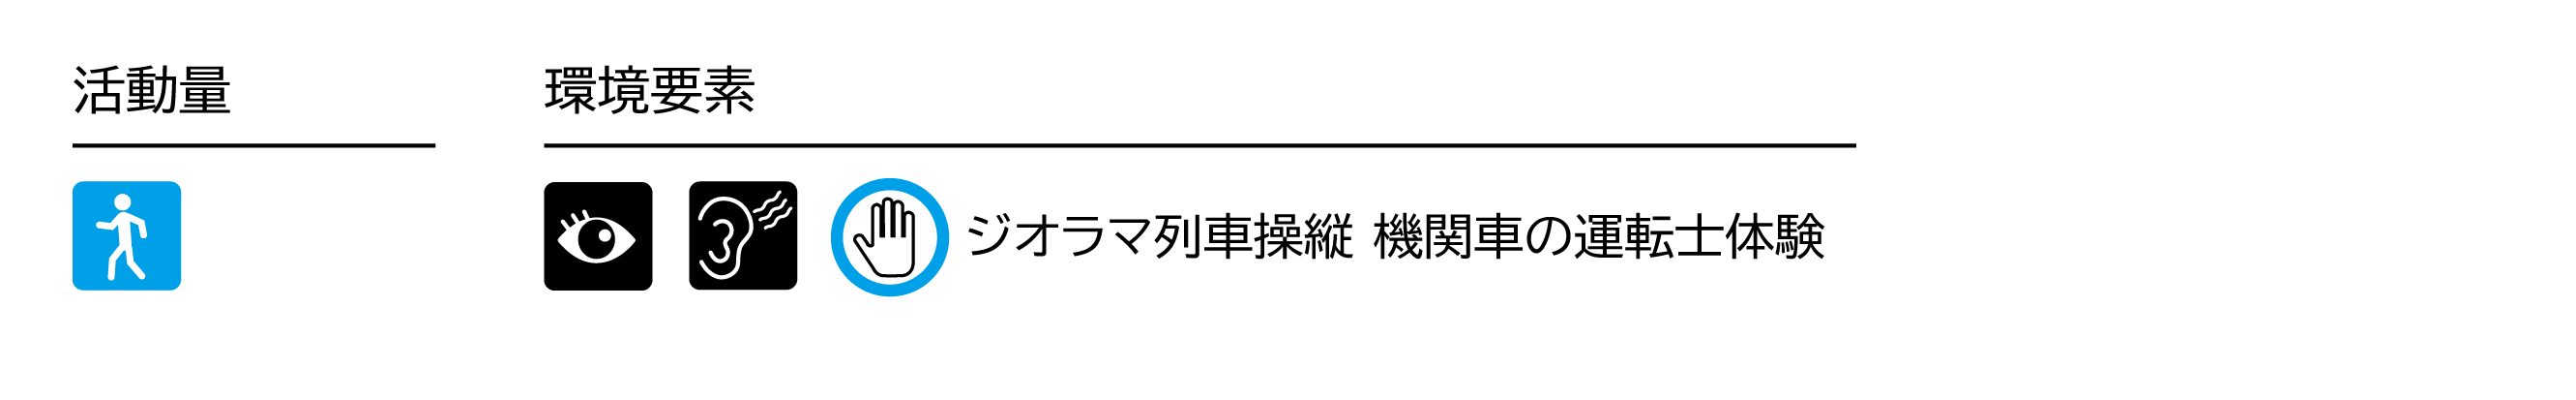 嵯峨野観光鉄道活動量コース３ジオラマ館.png